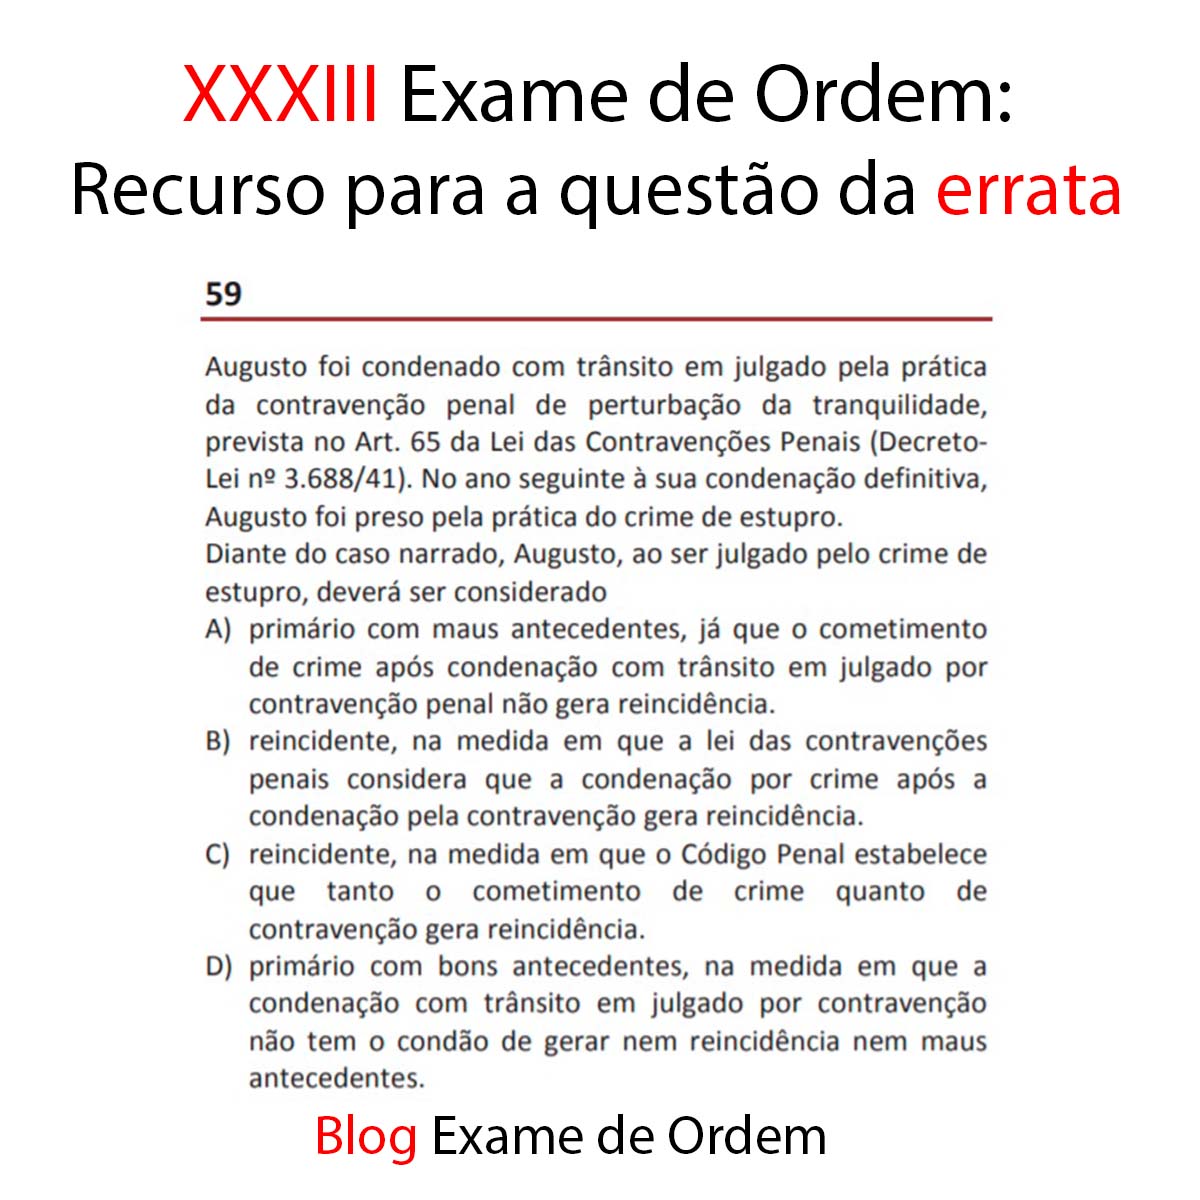 XXXIII Exame de Ordem: Recurso para a questão da errata